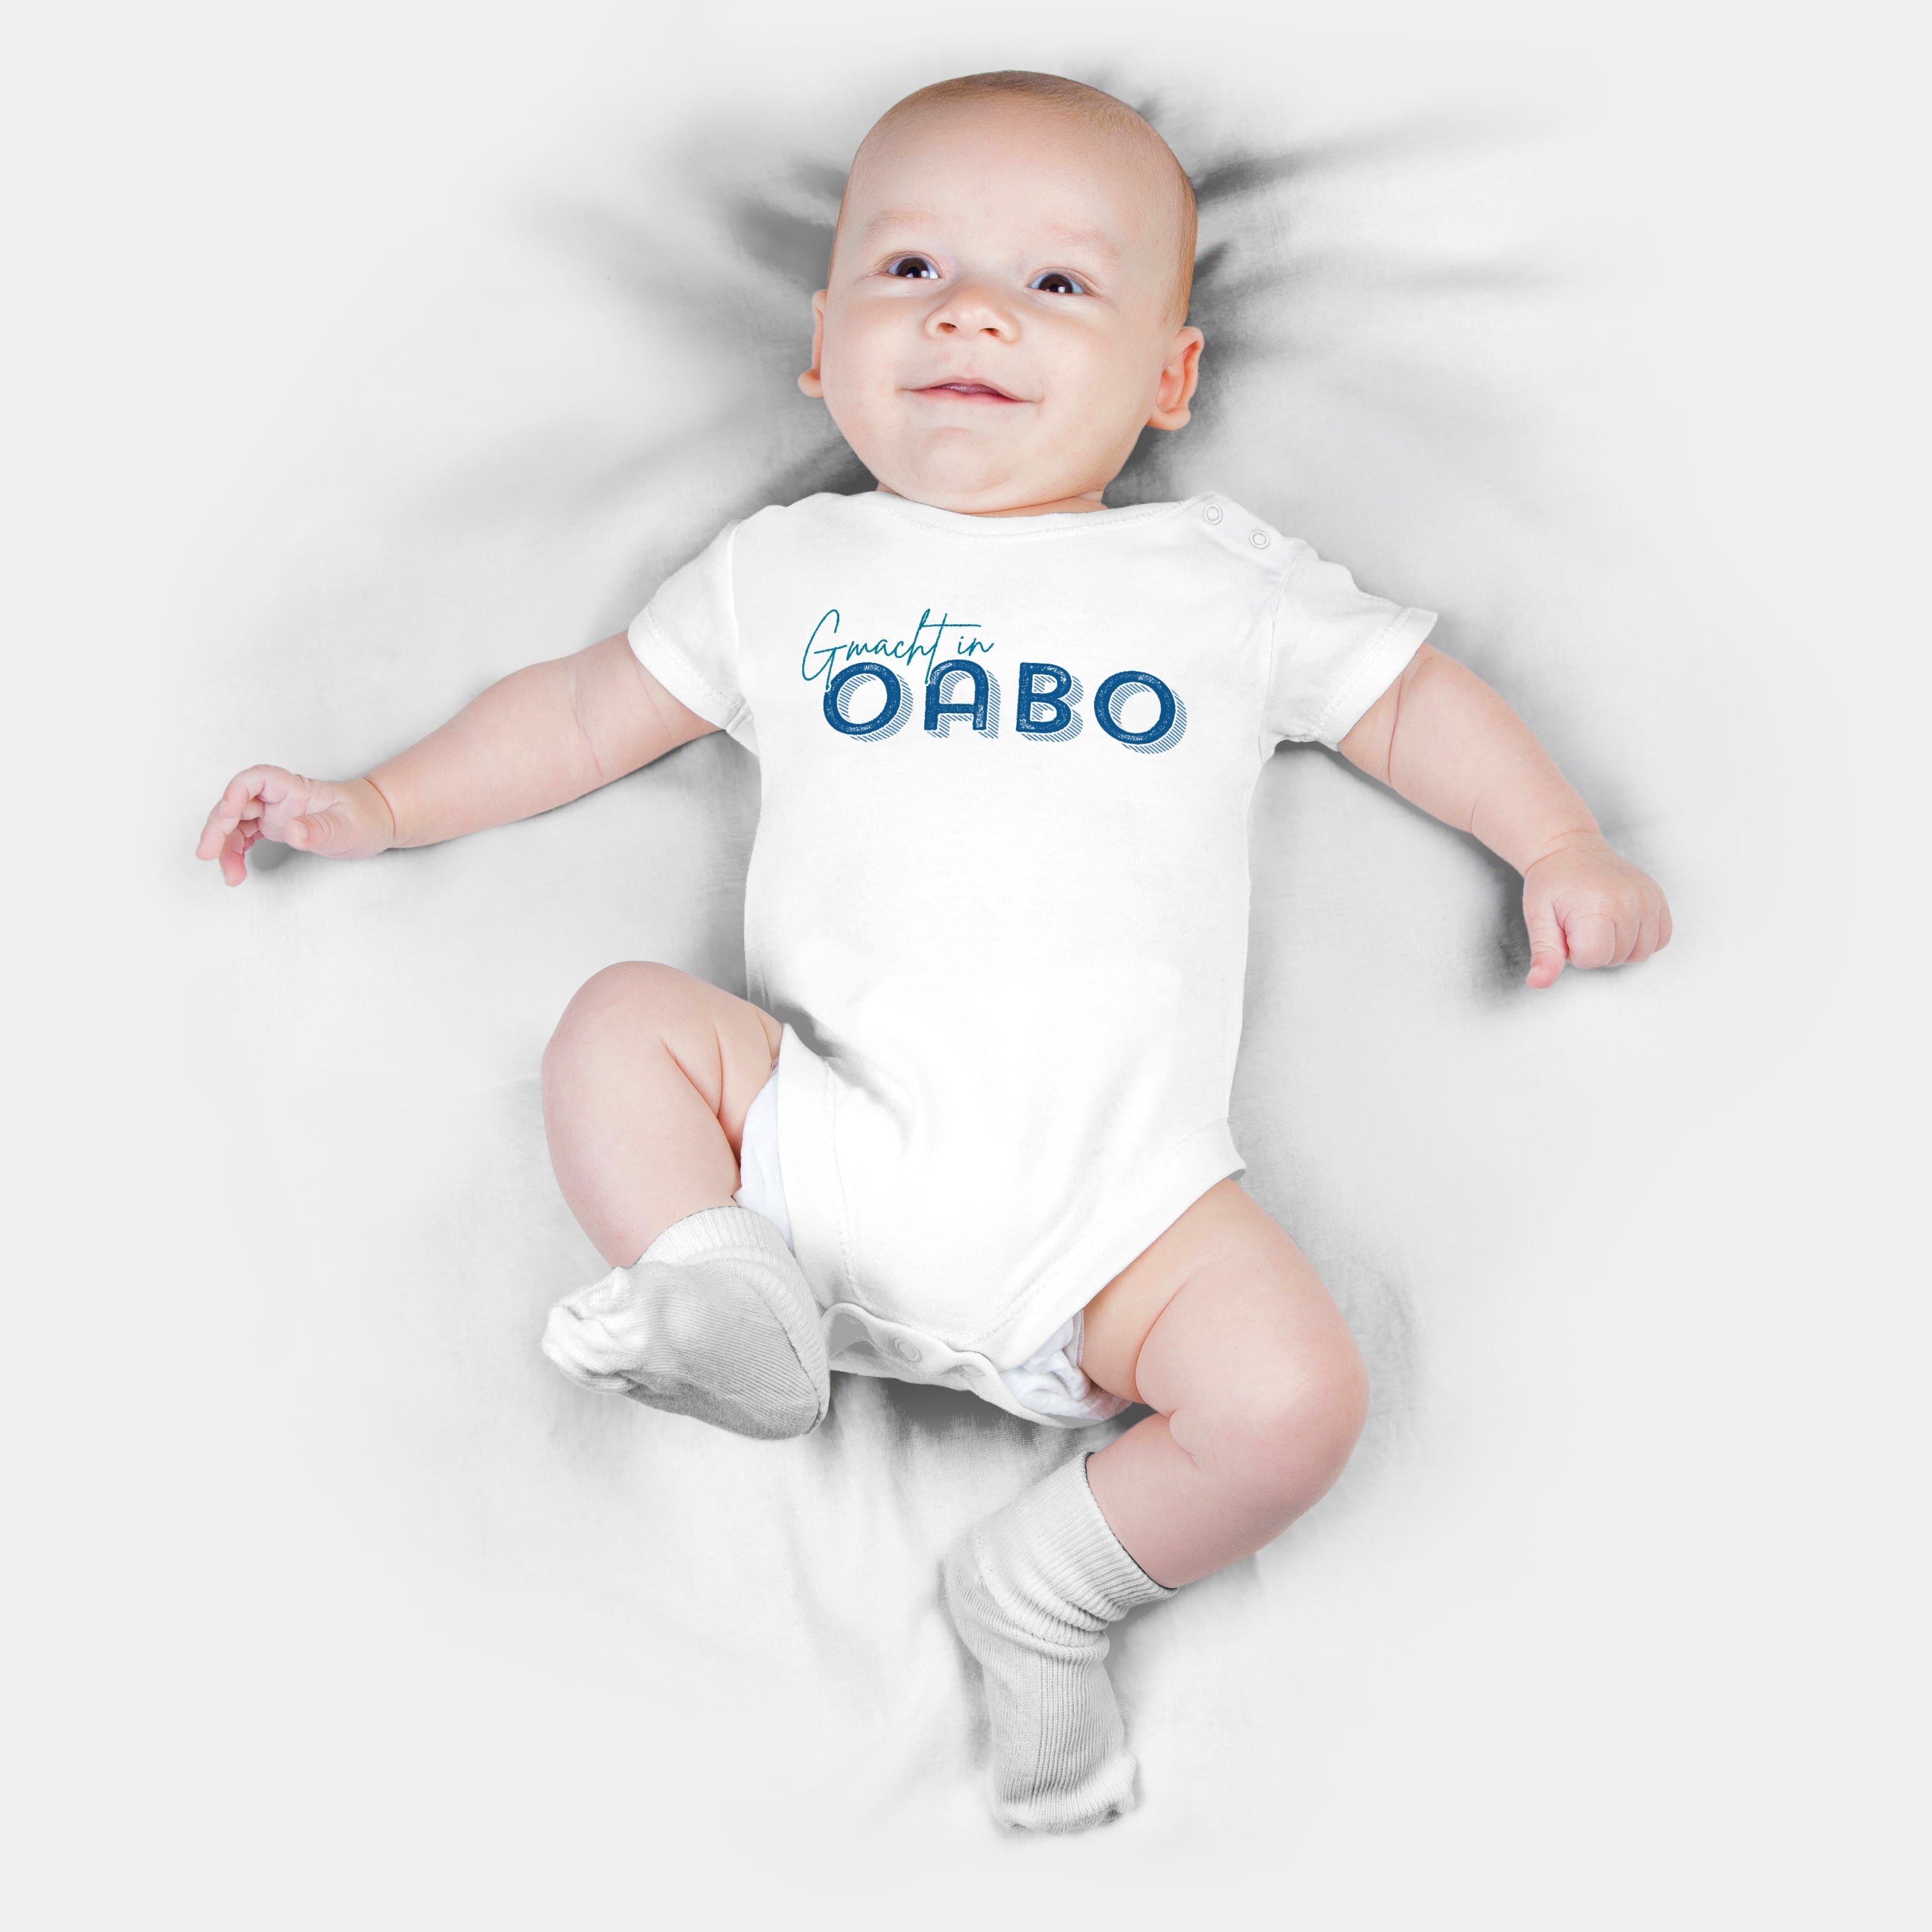 HEITER & LÄSSIG Baby-Body "Gamacht in Oabo" 62 / weiß - aus nachhaltiger und fairer Produktion